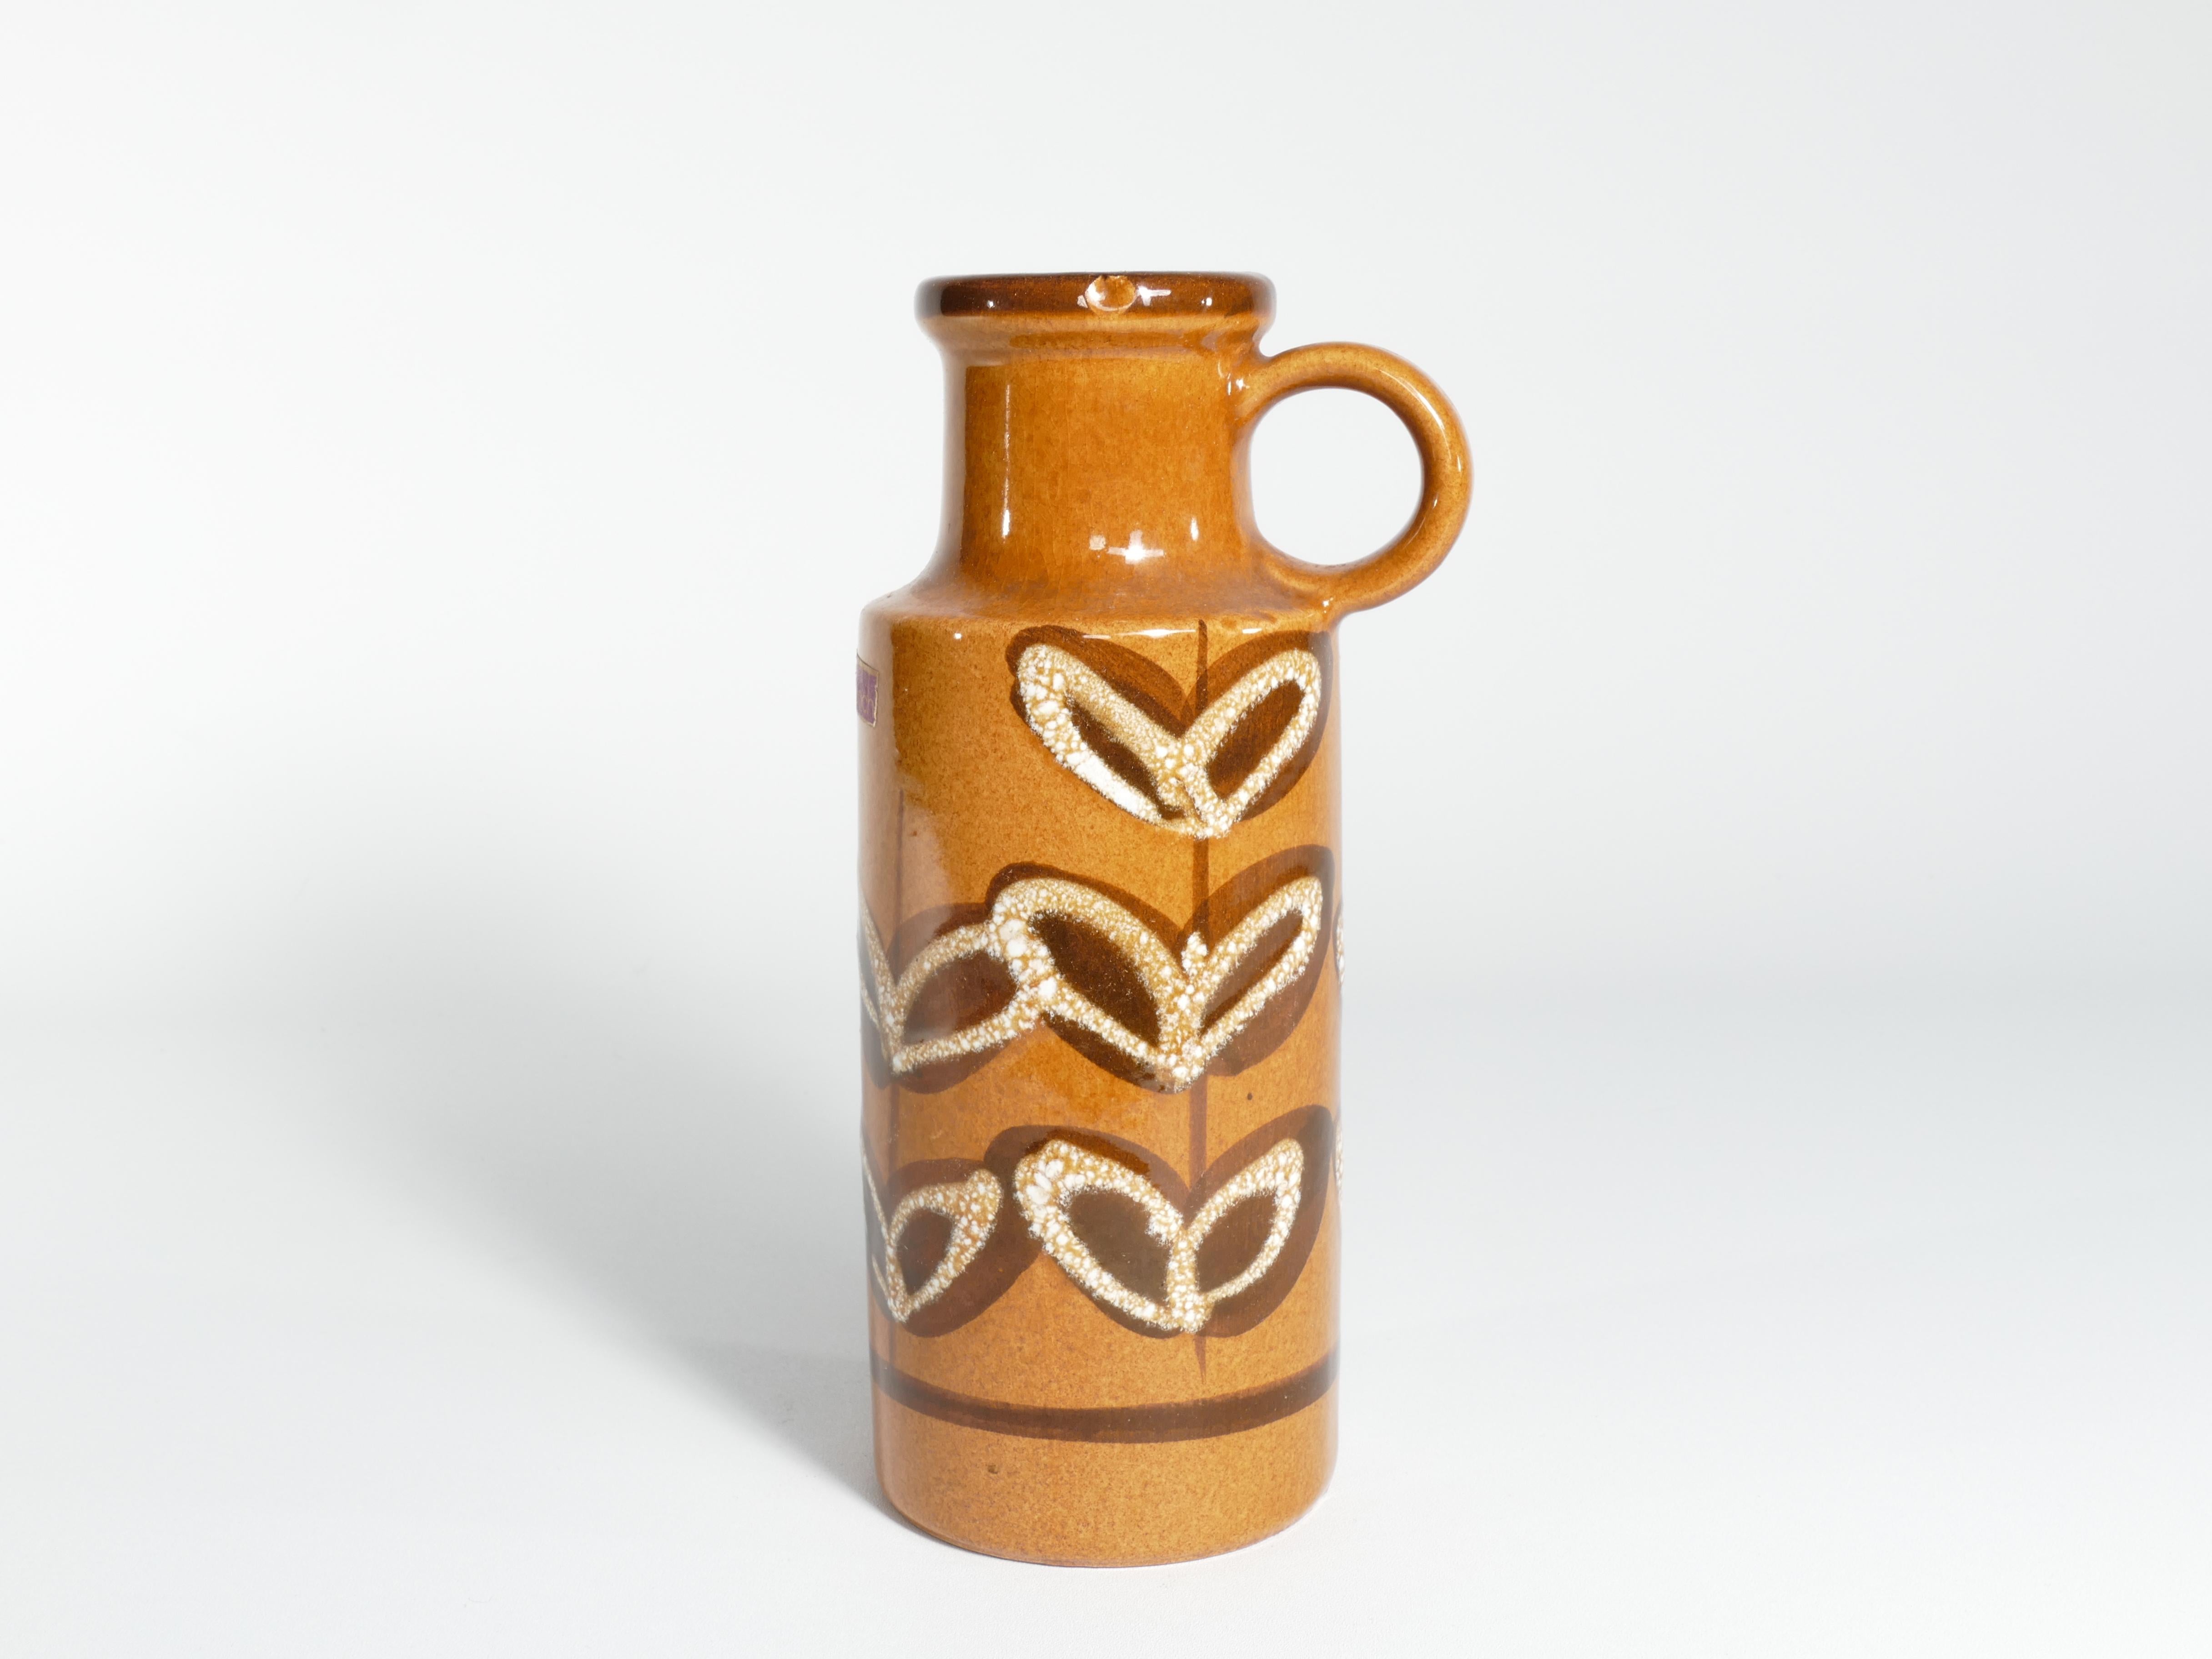 Vase jaune moutarde avec de beaux détails de feuilles brunes et blanches.
Voici un bel exemple de poterie d'art ouest-allemande de collection de Scheurich Keramik.

La base est moulée avec les mots 